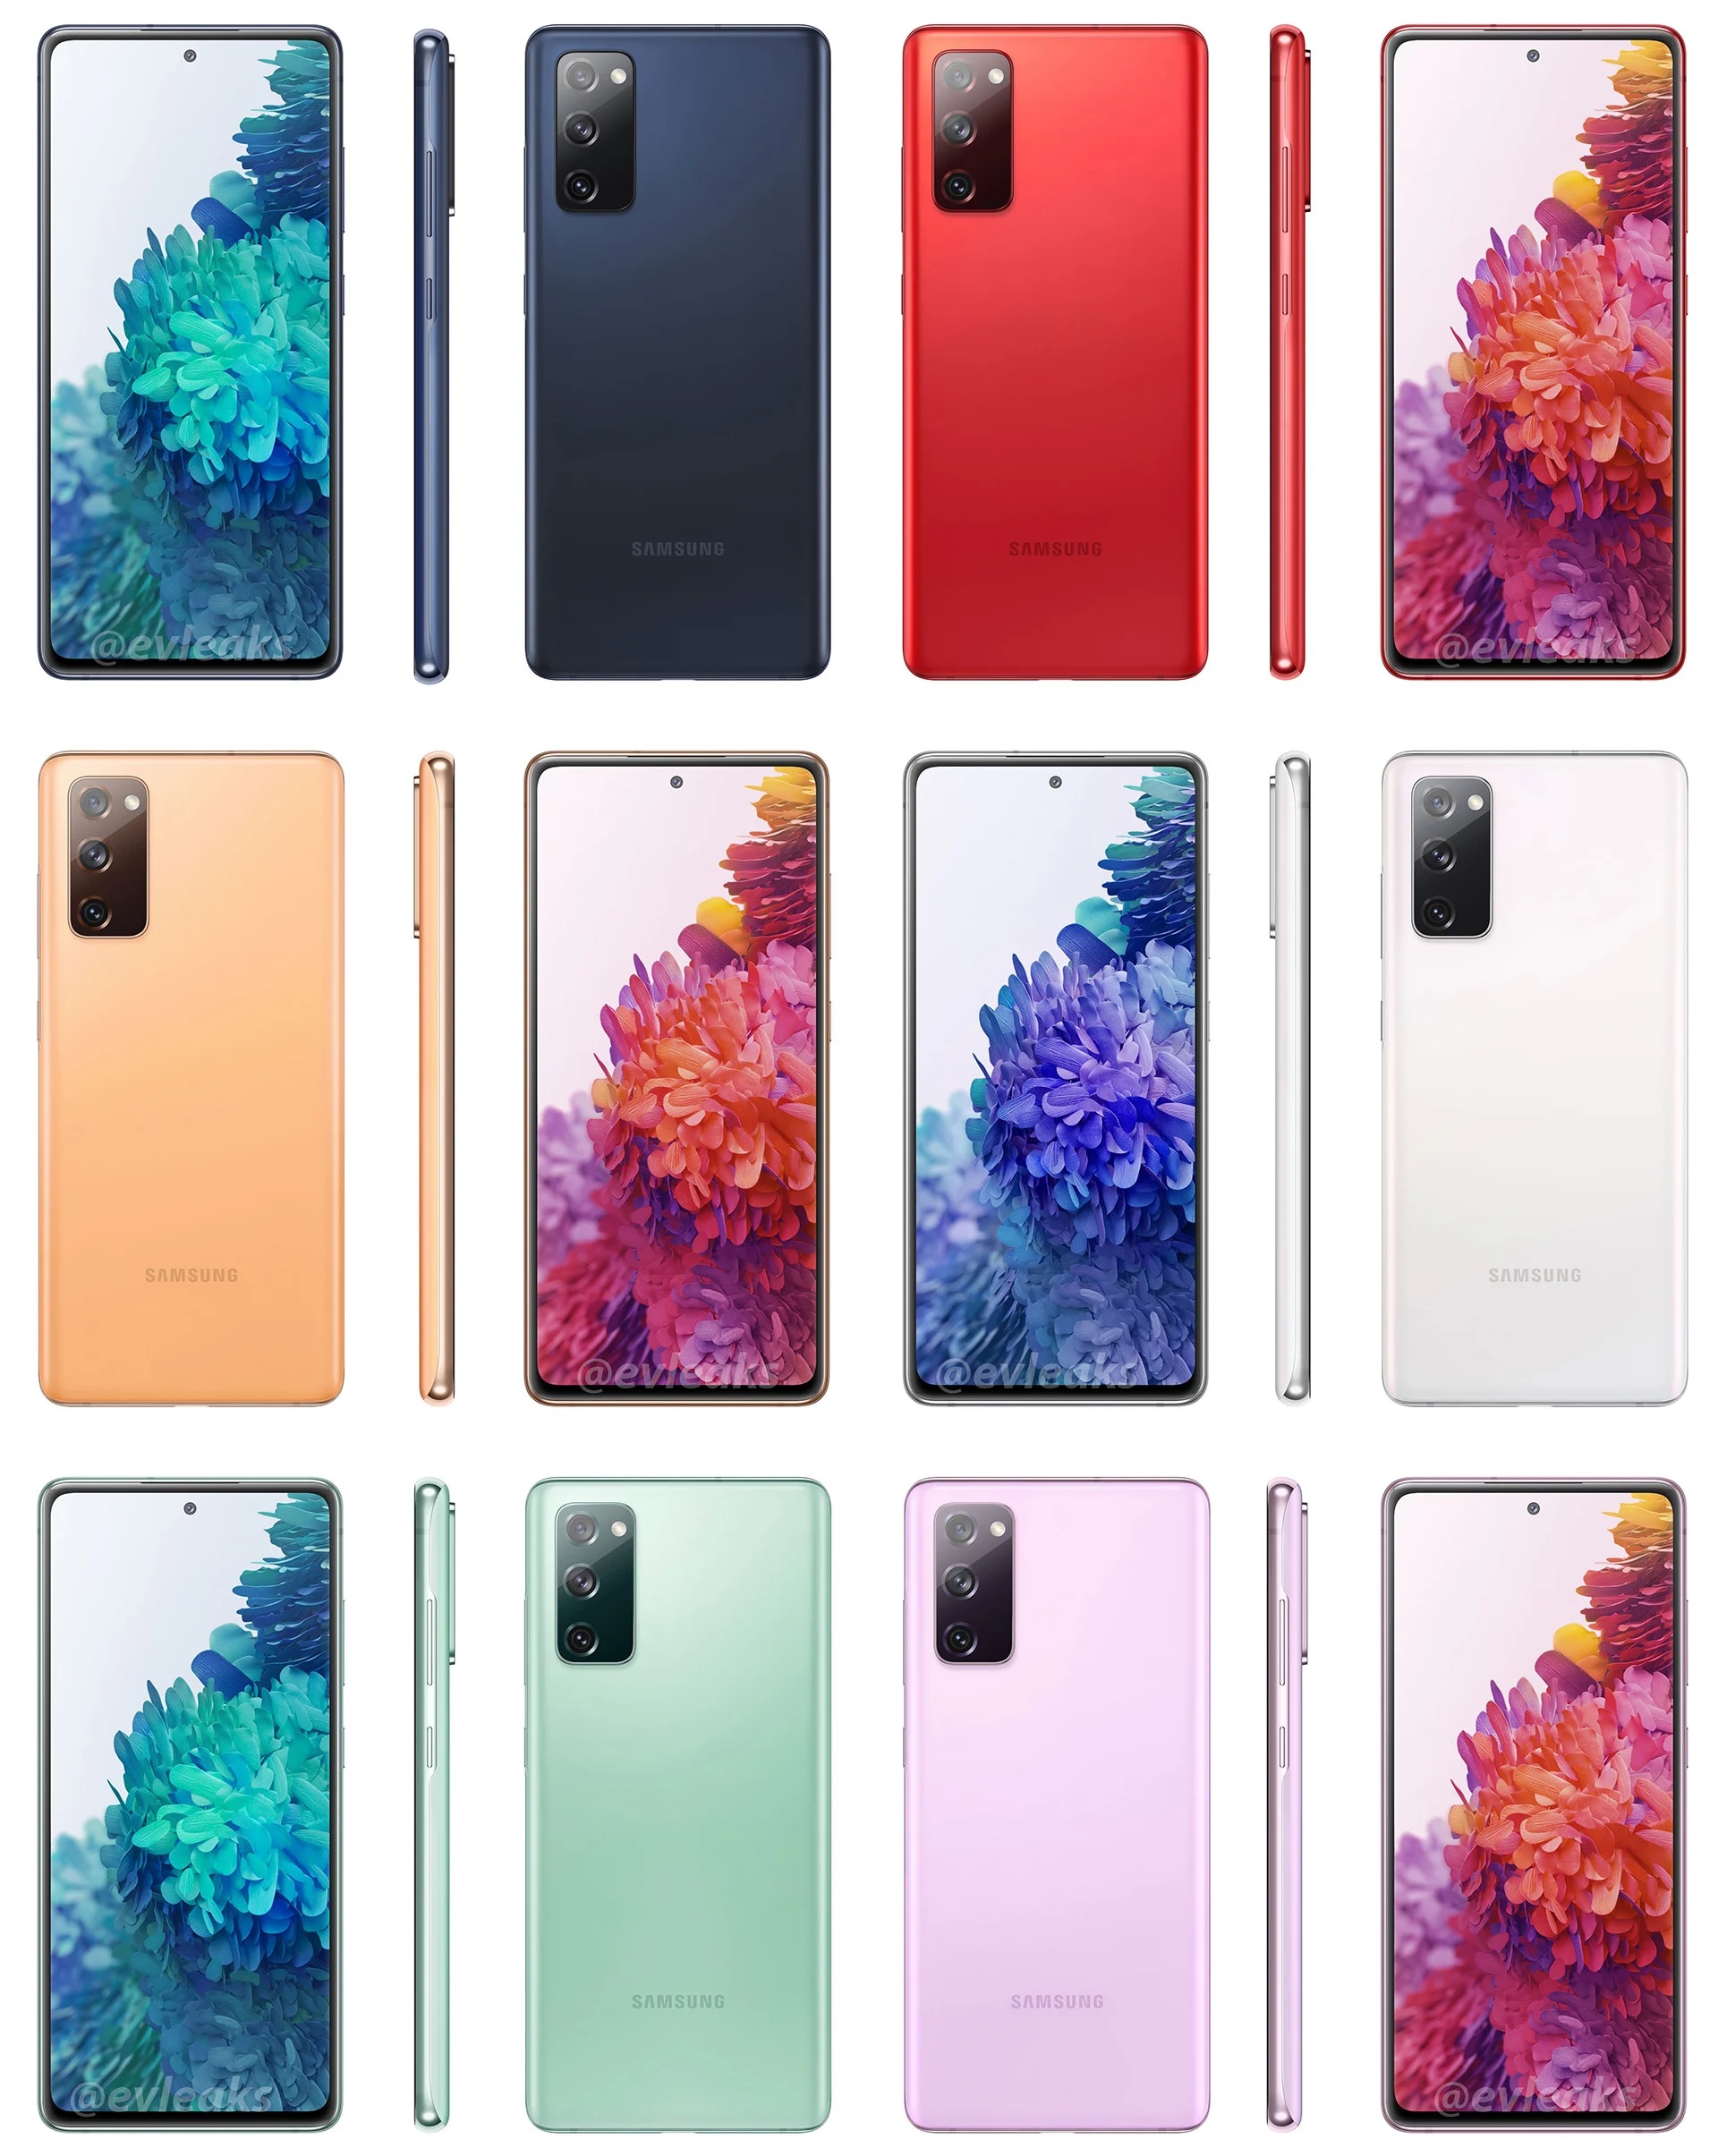 Samsung Galaxy S20 Fan Edition dostpny bdzie w szeciu rnych kolorach